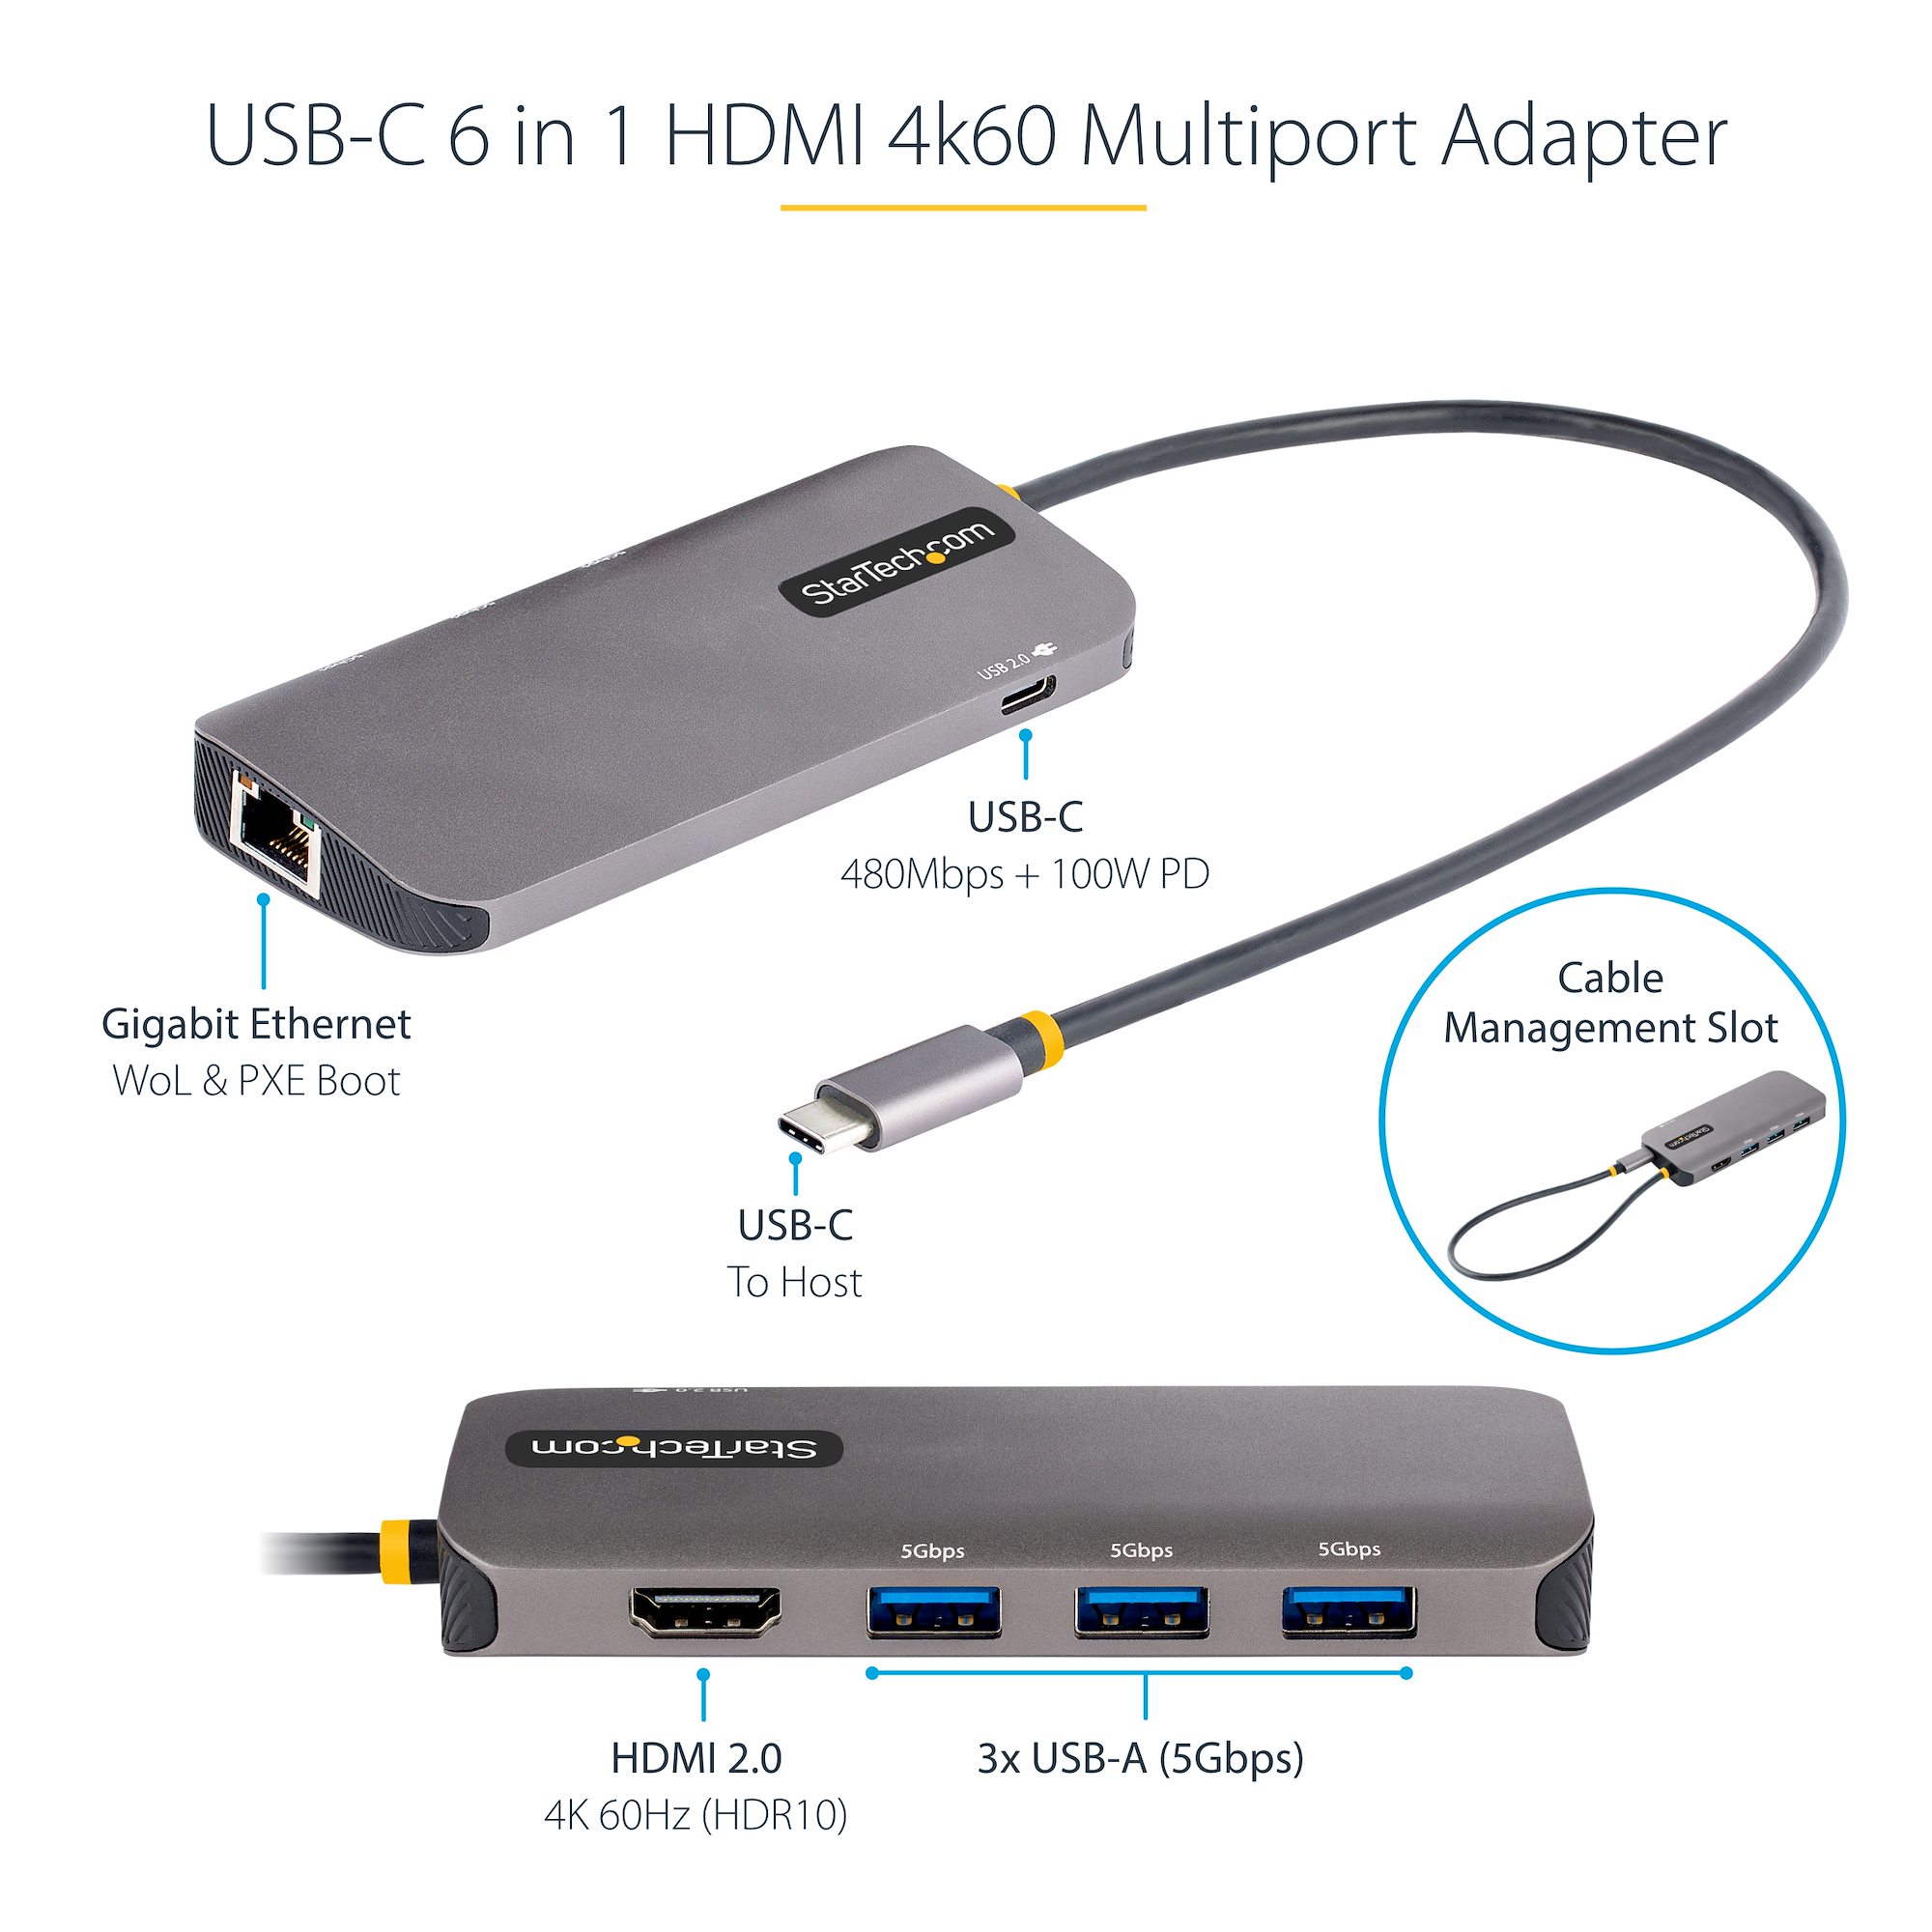 StarTech.com Adaptateur USB C vers HDMI VGA - Dock USB C Multiport  Digital/AV - Adaptateur USB Type C Jusqu'à 4K60Hz - Station d'Accueil USB  C, Compatible Thunderbolt 3/4 - Adaptateur de Voyage